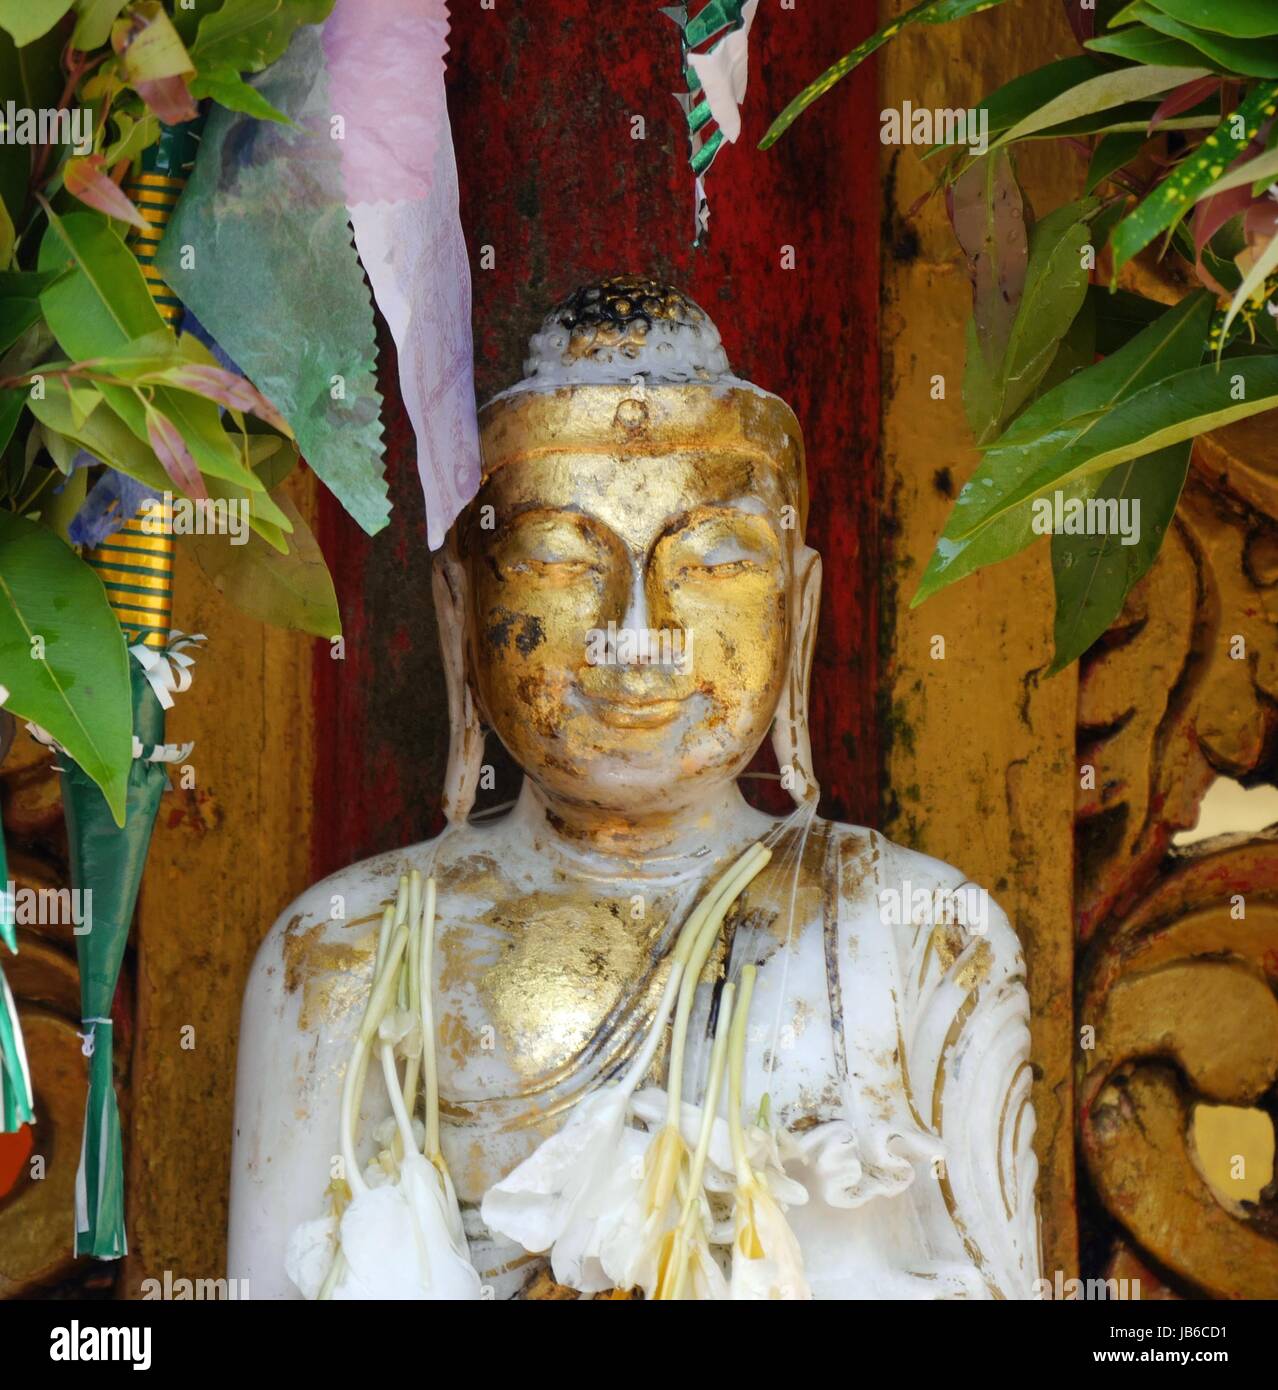 Gros plan de la figure de Bouddha doré gracieux avec l'expression de la sérénité Banque D'Images